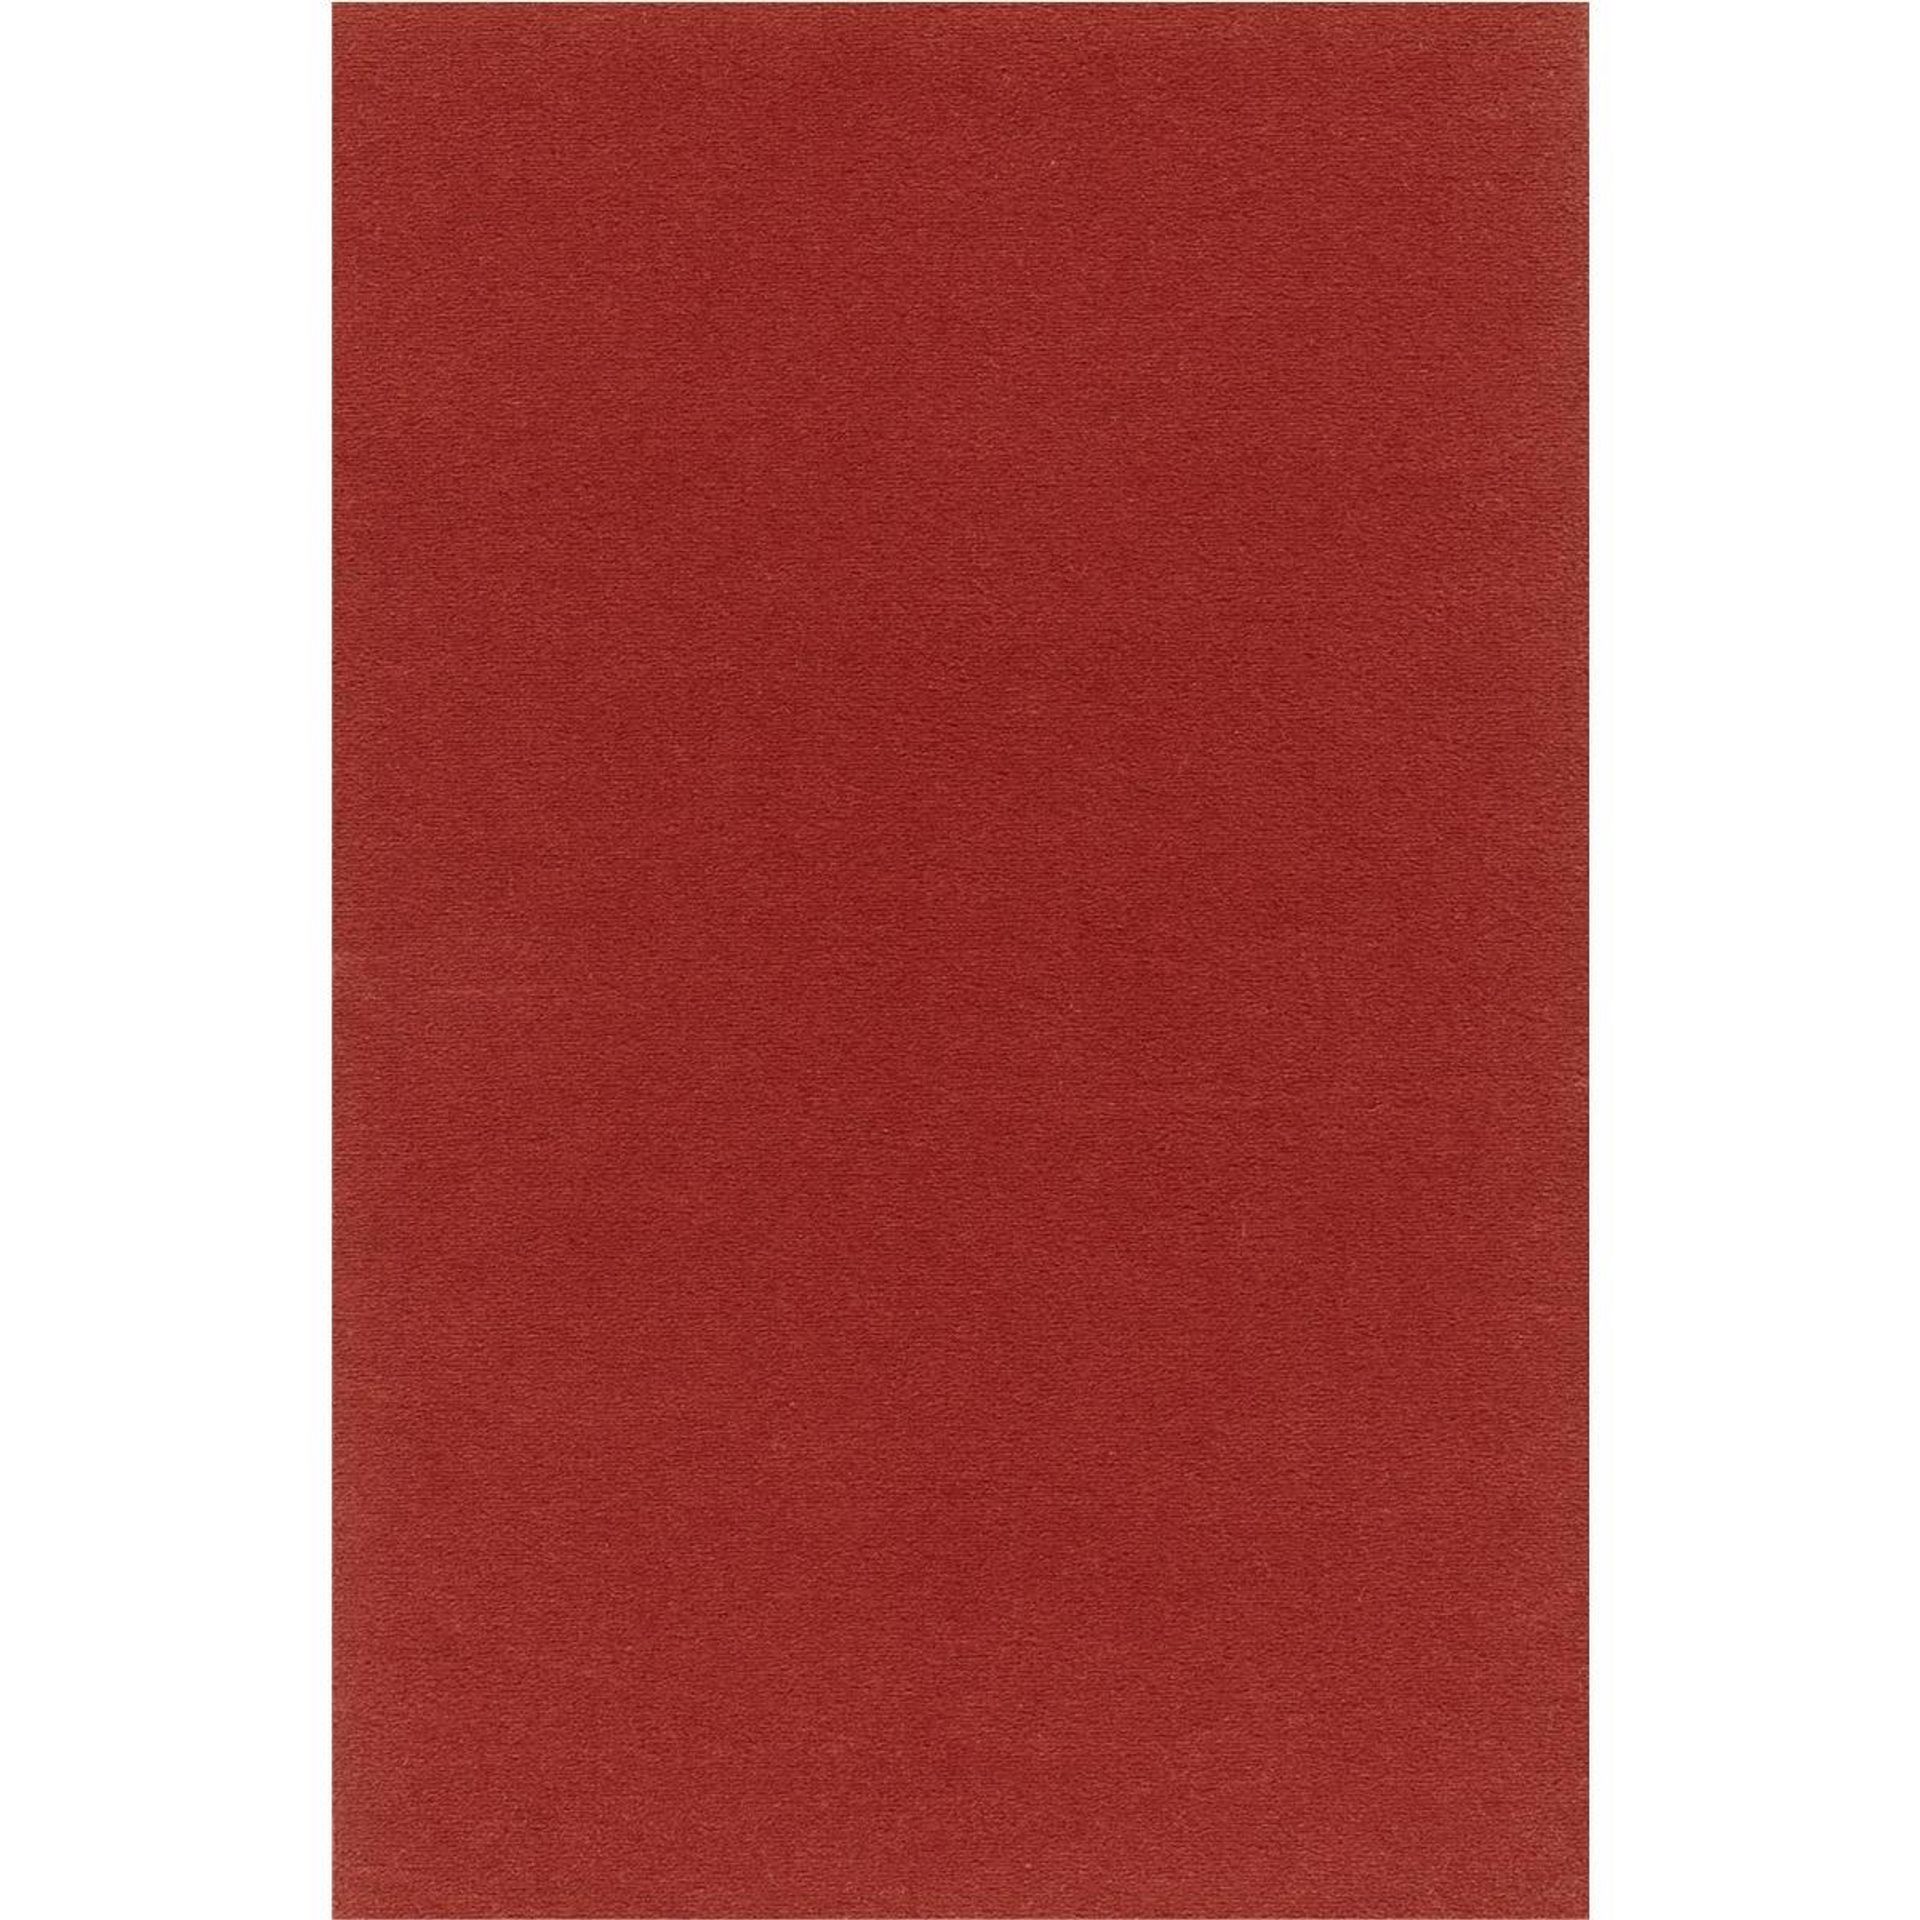 Teppichboden Vorwerk Passion 1000 MODENA Velours Rot 1P02 - Rollenbreite 500 cm